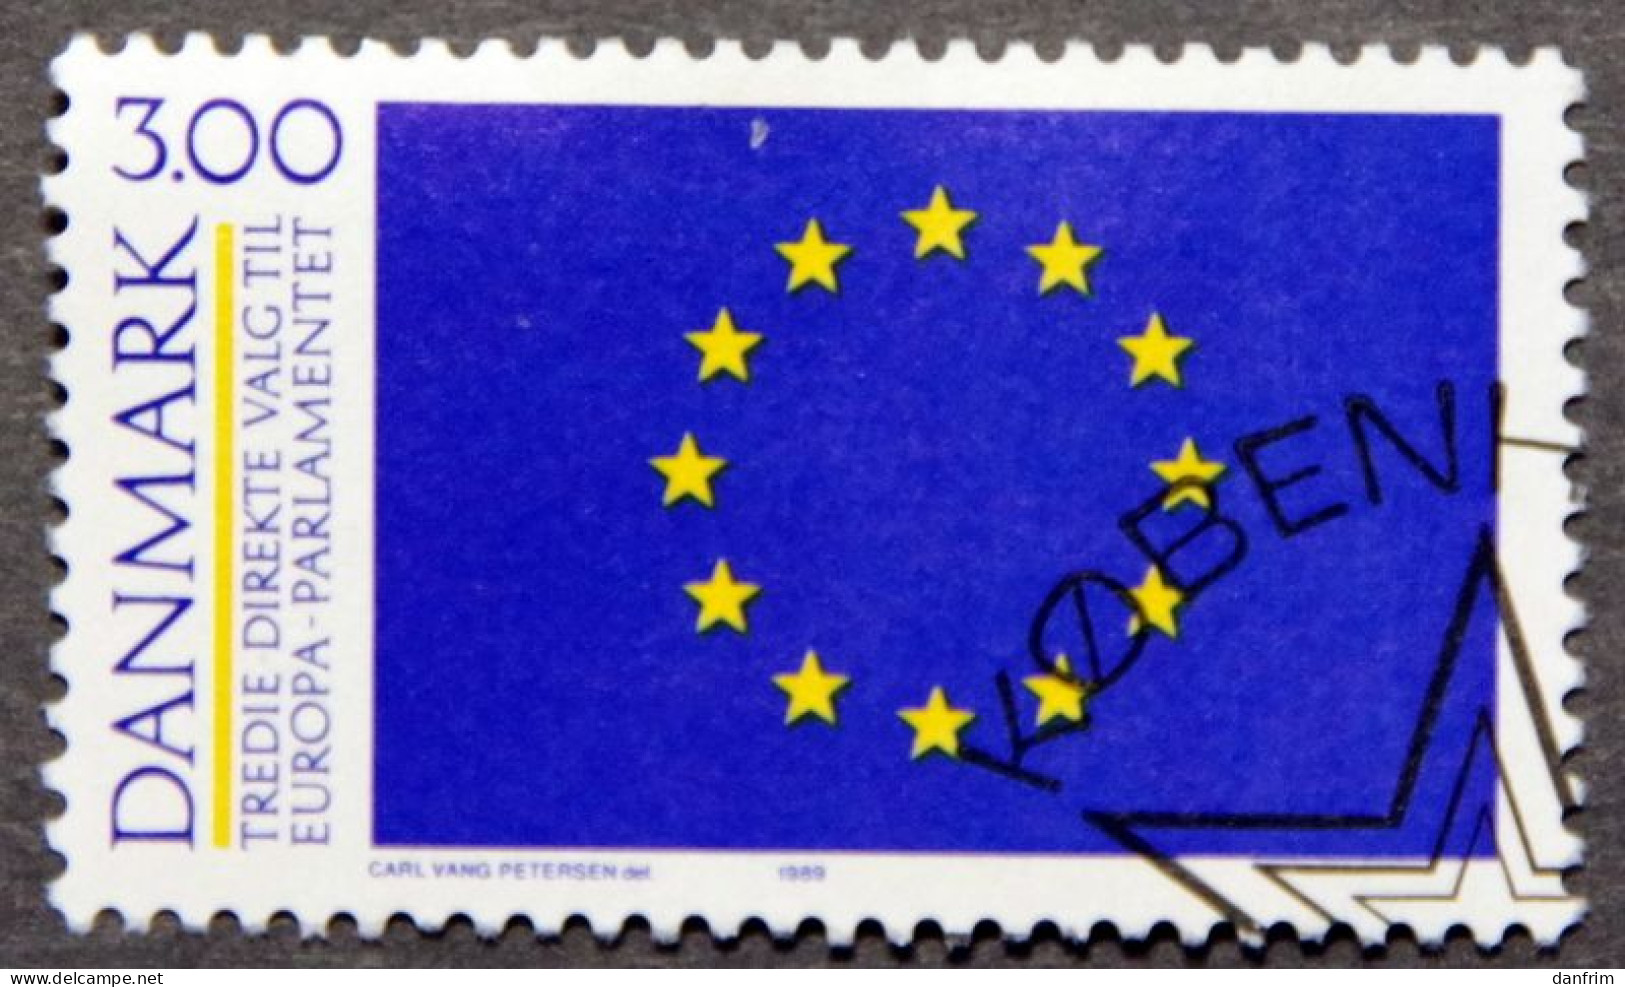 Denmark 1989 MiNr. 949 (O)  Europæiske Parlament ( Lot K 715) - Gebraucht